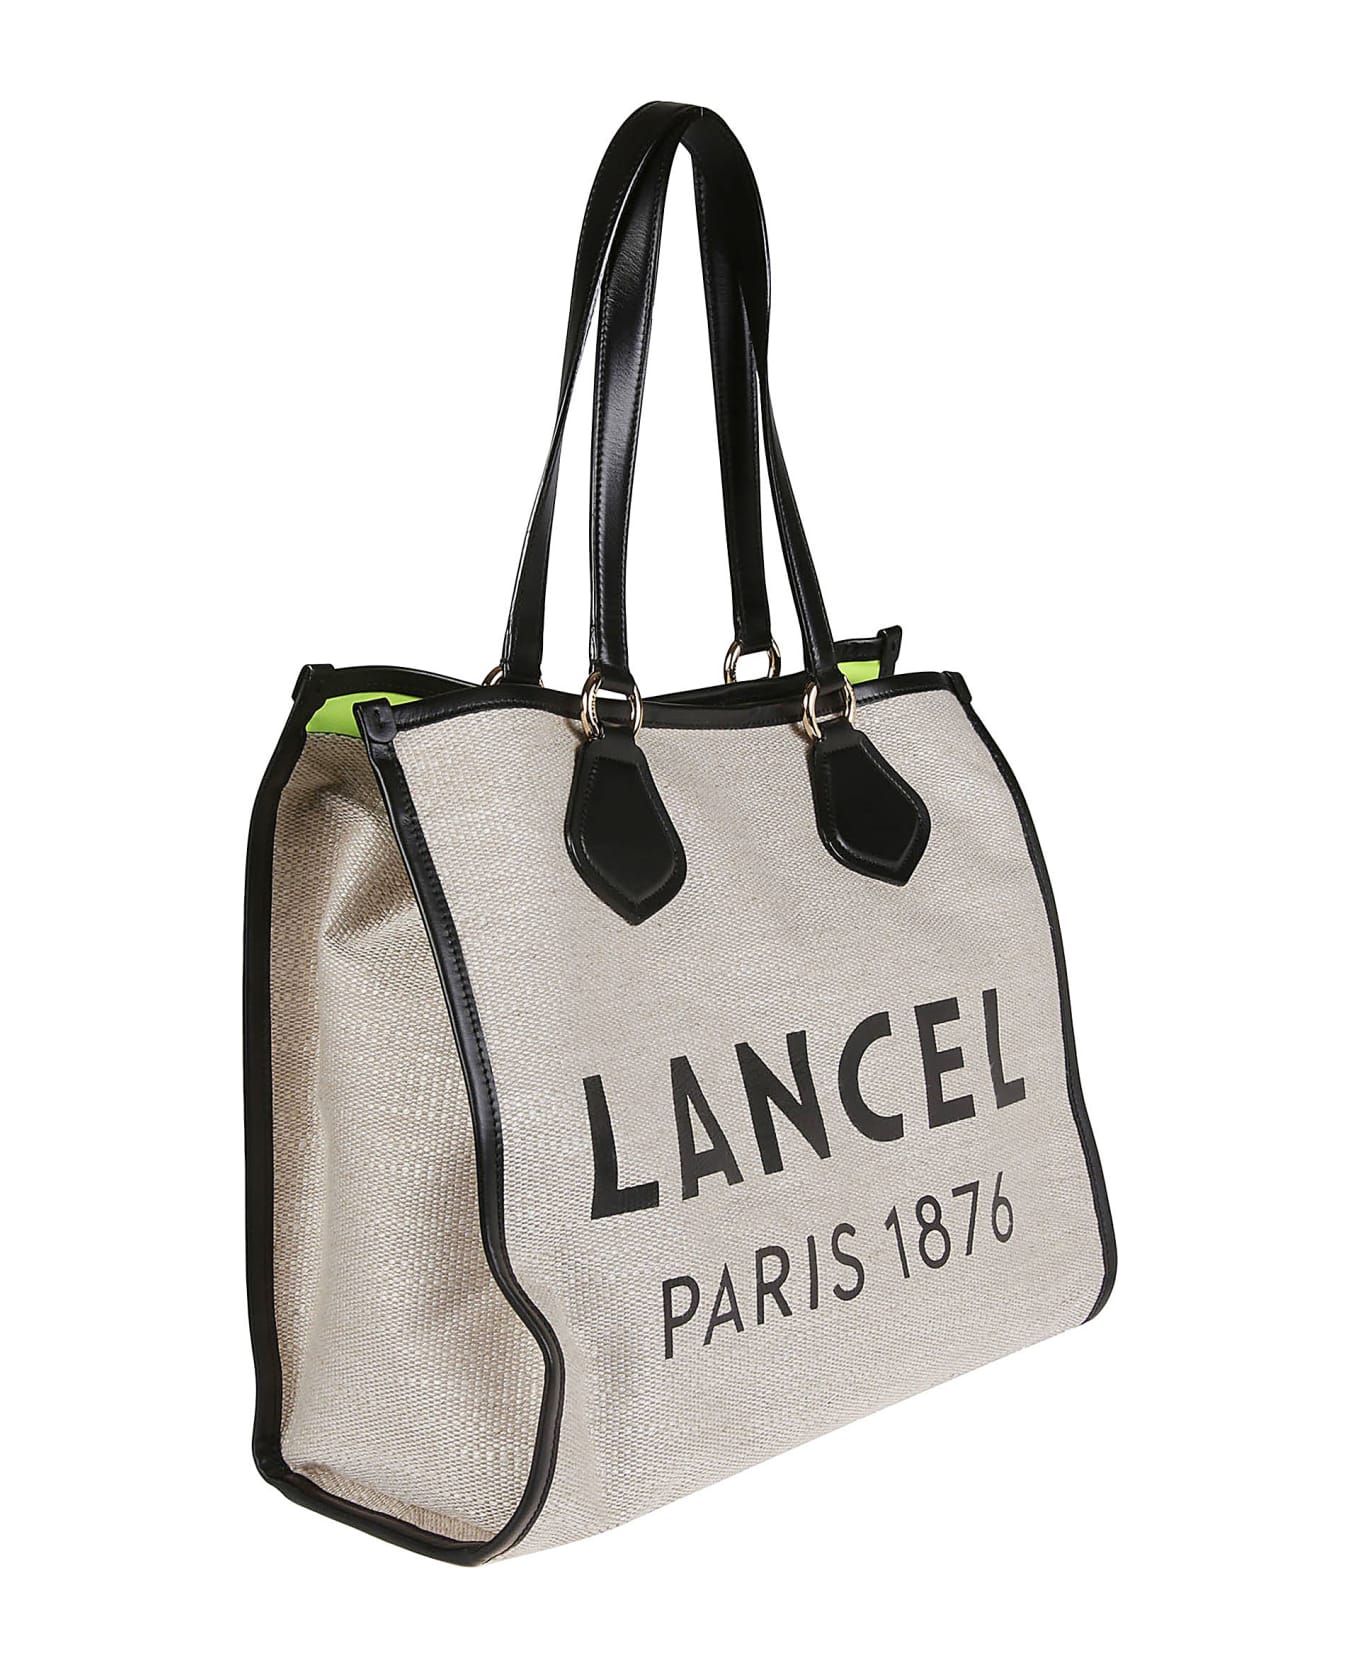 Lancel Summer Large Tote Bag - A Naturel/noir